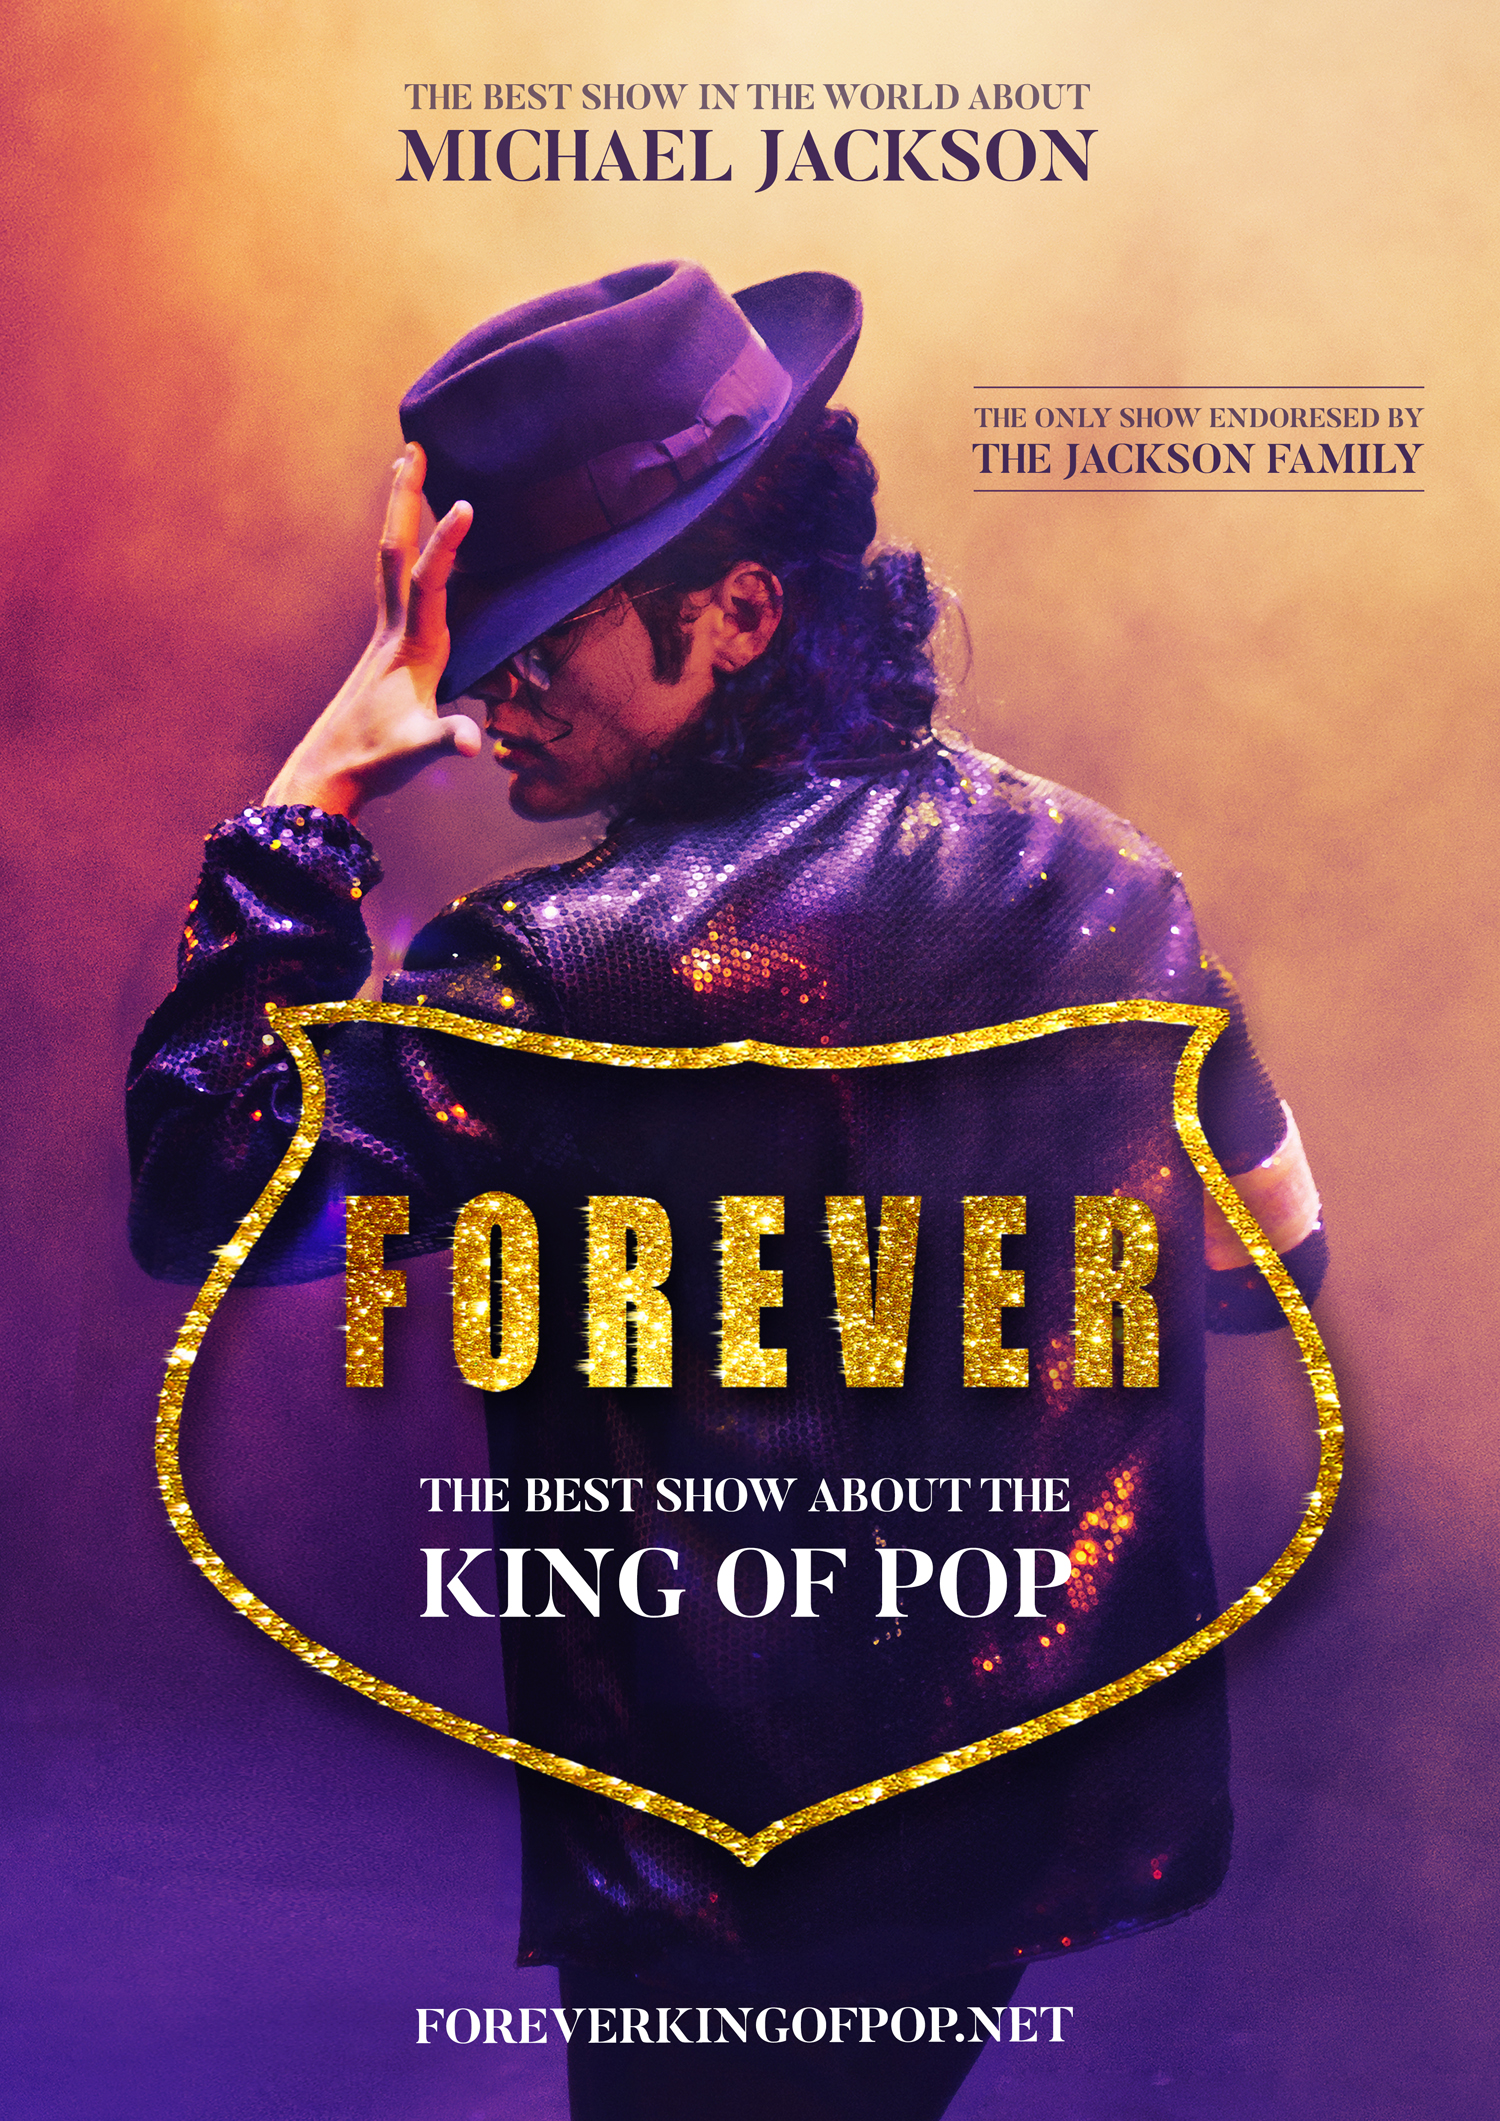 Le spectacle Forever, The best show about the King of Pop arrive en France et passera au Casino de Paris en novembre 2019